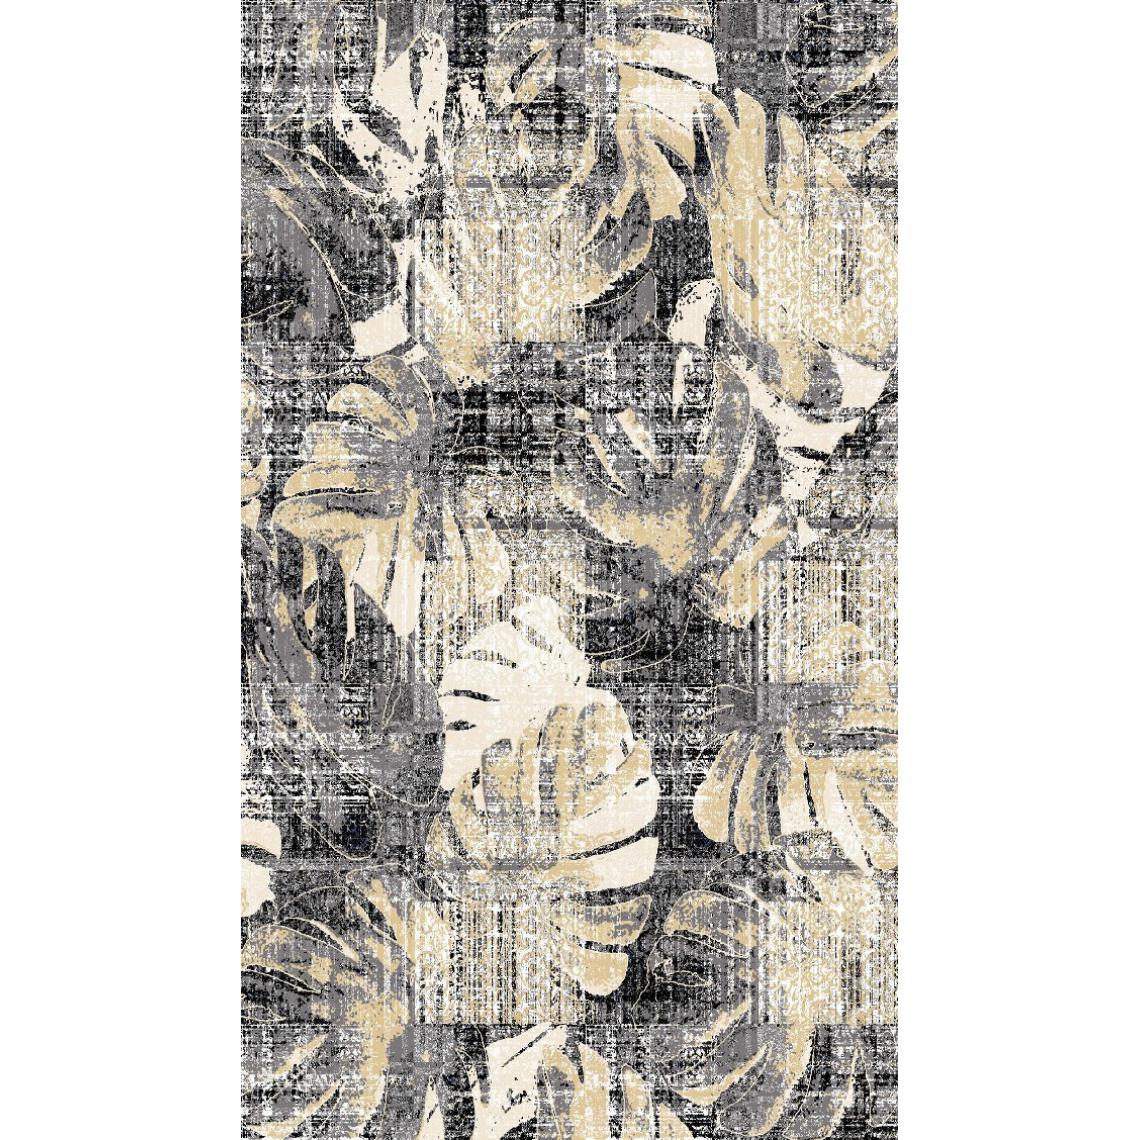 Homemania - HOMEMANIA Tapis Imprimé Jungle 1 - Nature - Décoration de Maison - Antidérapants - Pour Salon, séjour, chambre à coucher - Multicolore en Polyester, Coton, 60 x 100 cm - Tapis